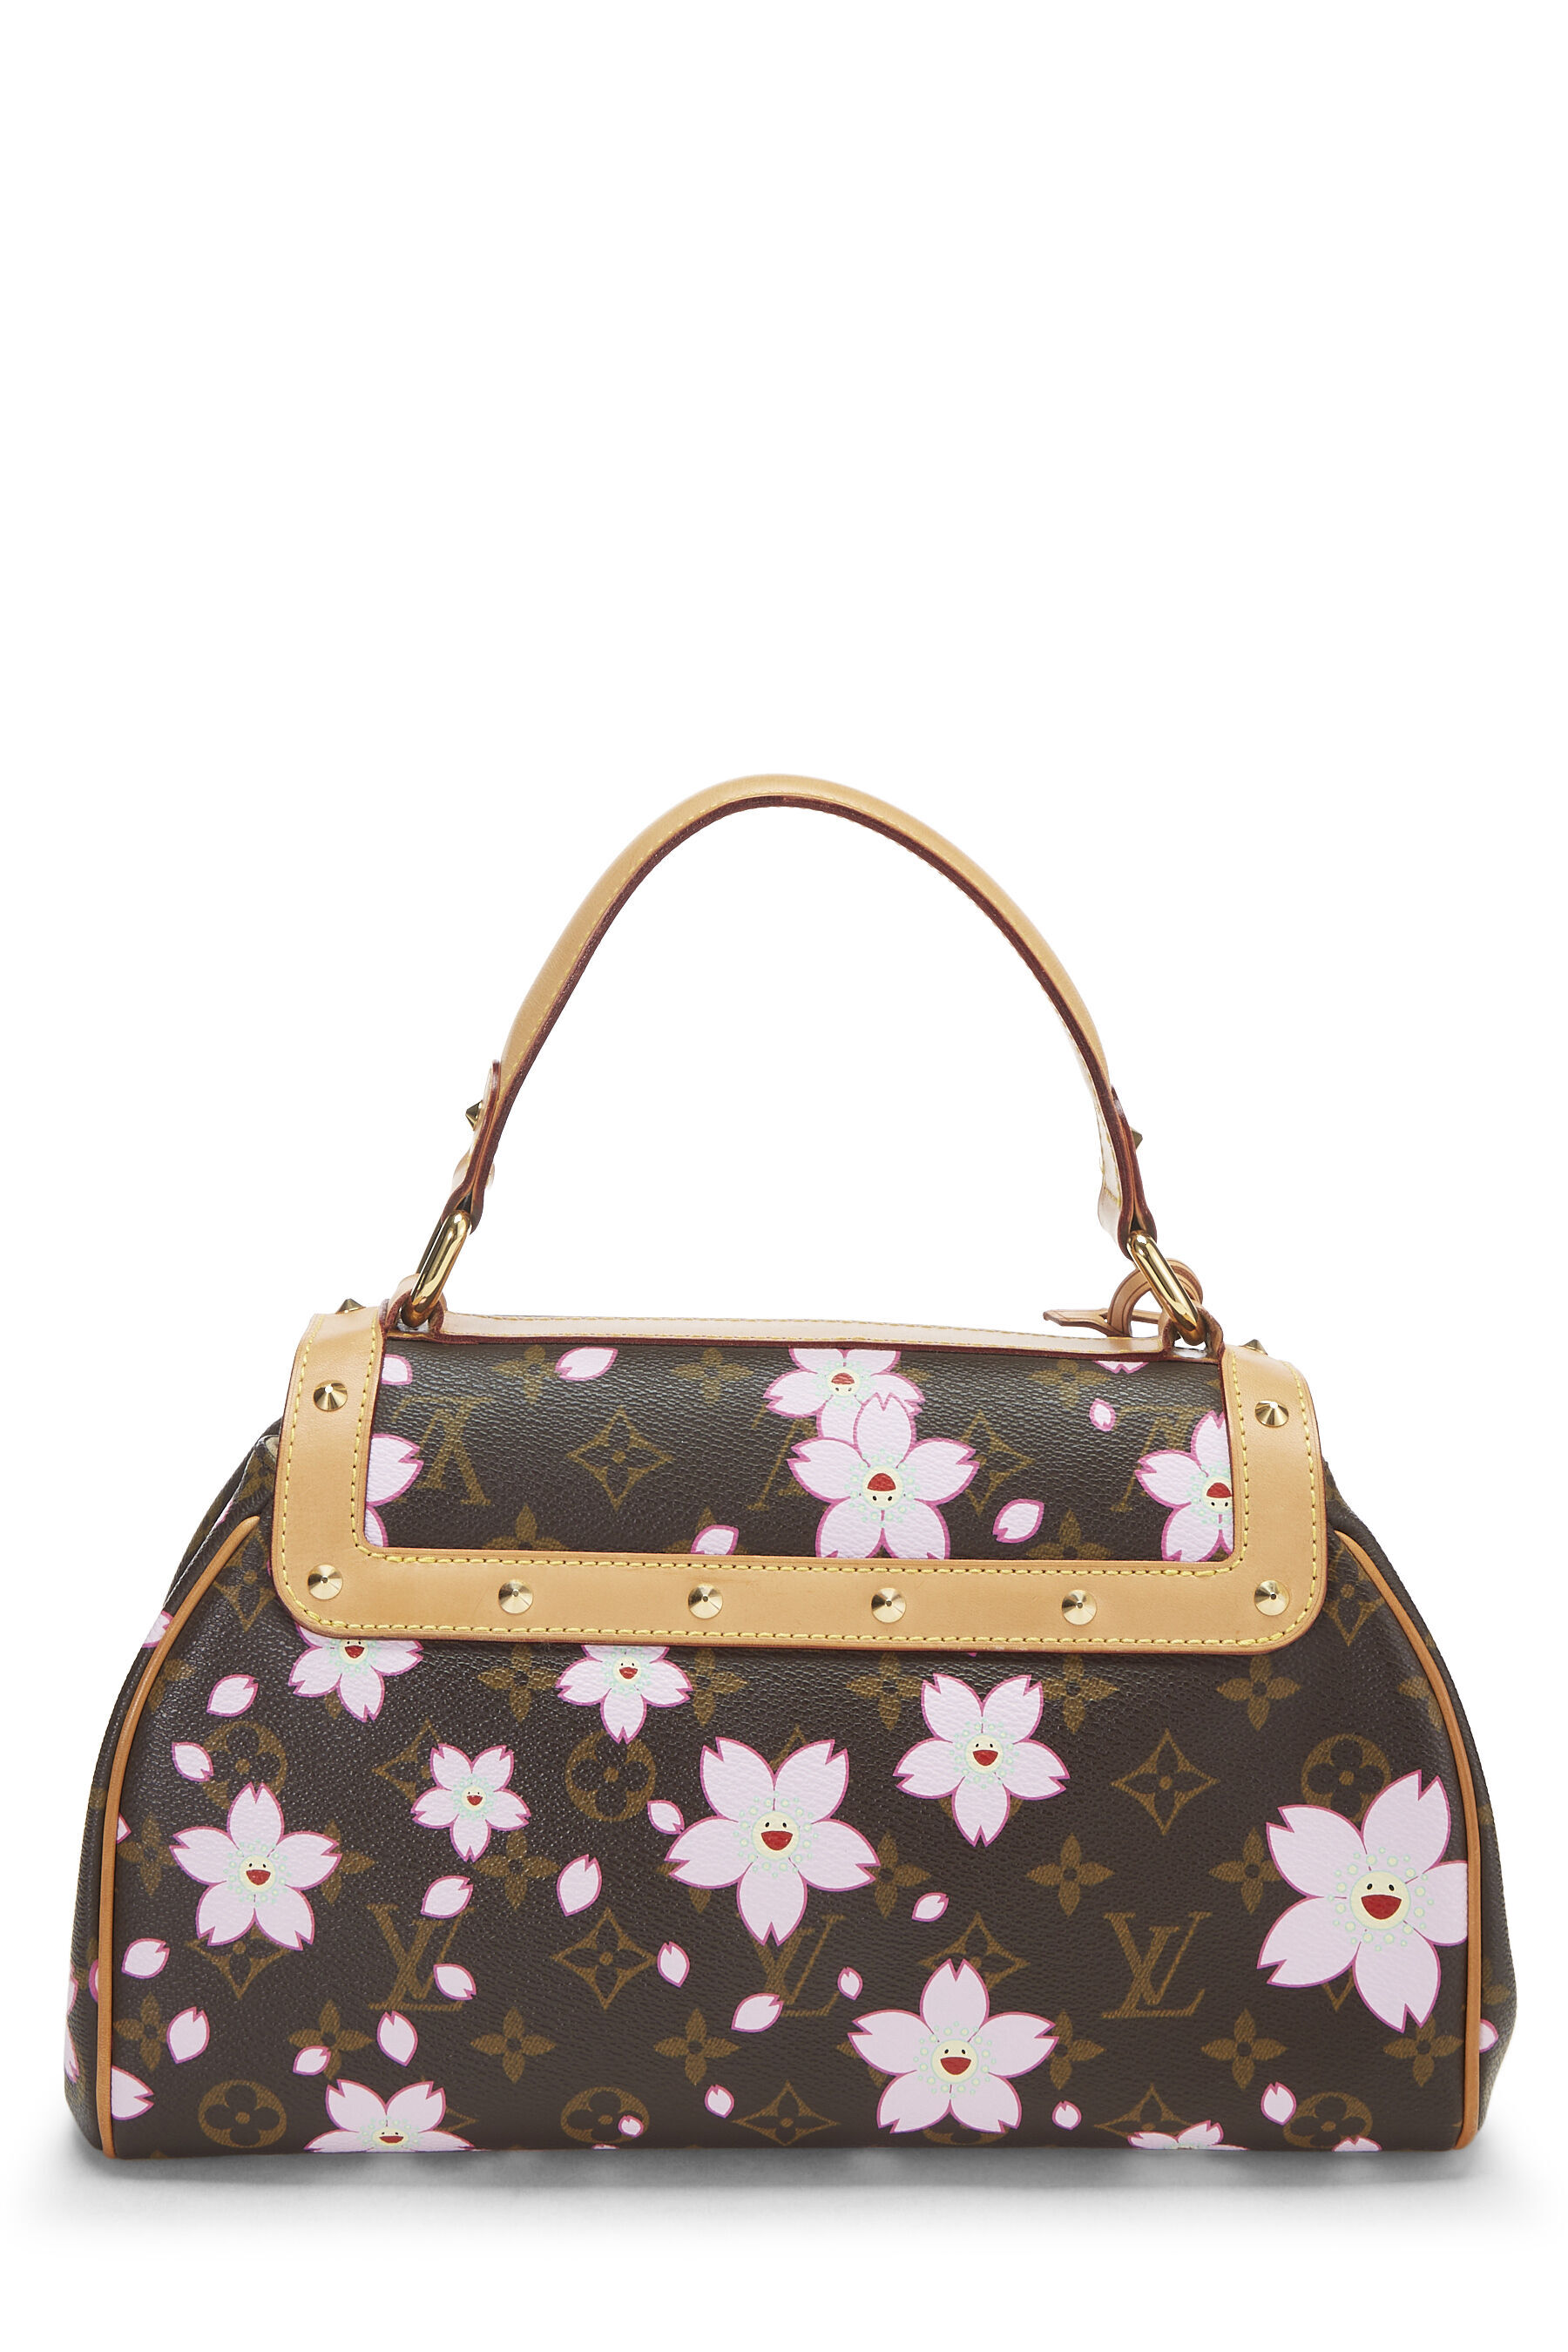 Louis Vuitton Monogram Canvas Limited Edition Cherry Blossom Papillon Bag Louis  Vuitton  TLC